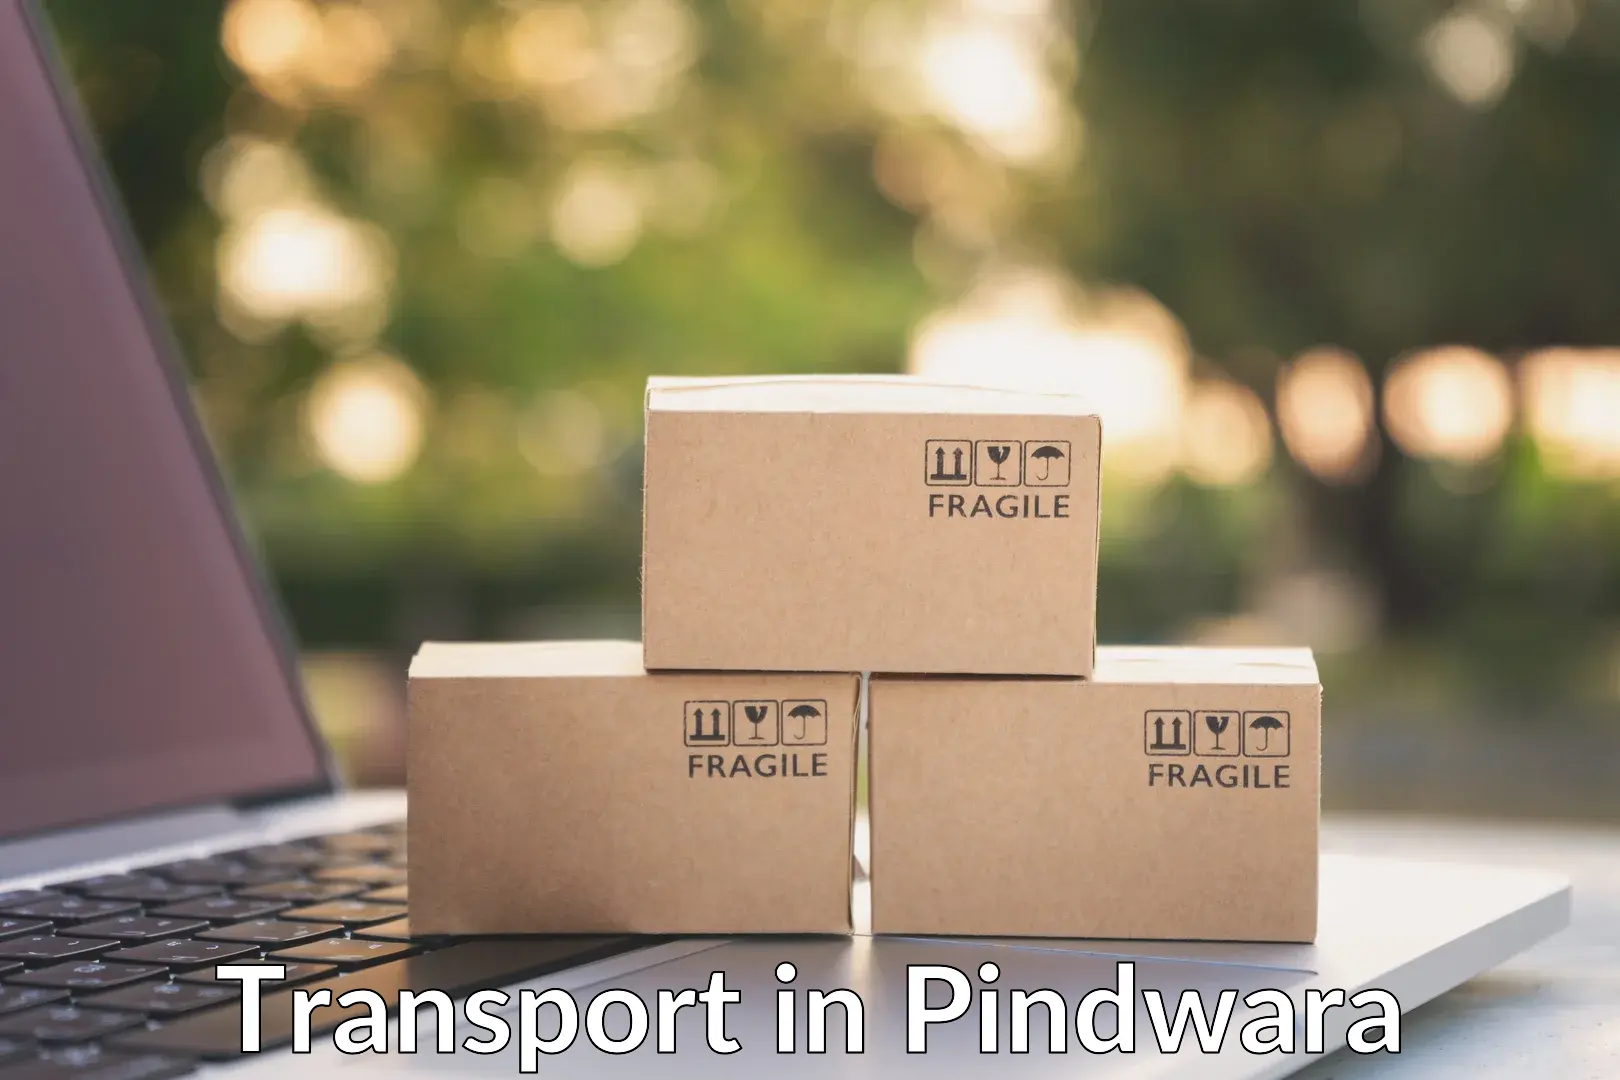 Cargo train transport services in Pindwara